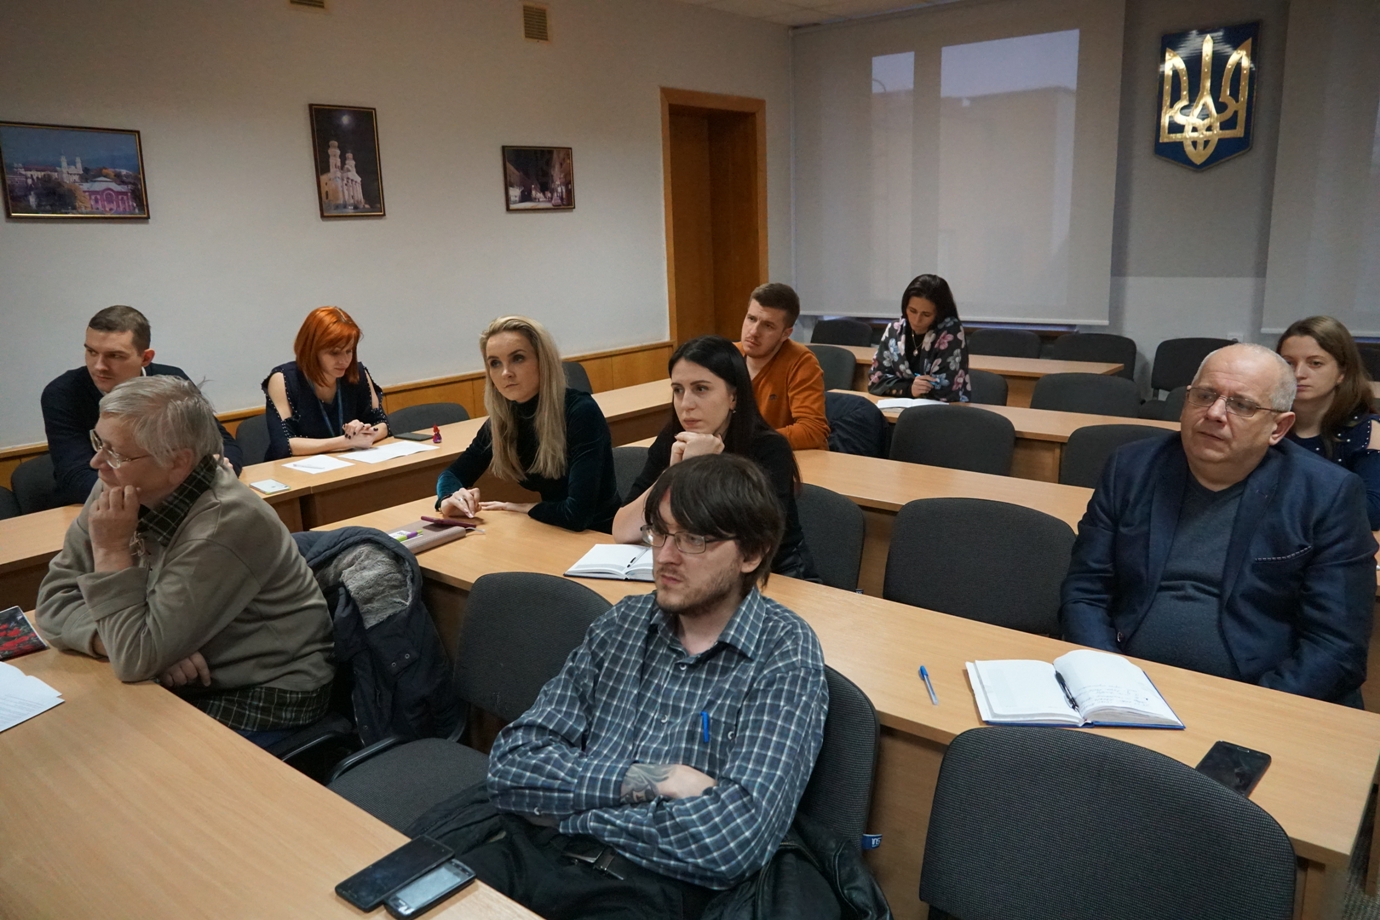 Нагадаємо, восени 2019 року в Ужгороді представили результати чергового, 6-го щорічного вимірювання Індексу публічності органів місцевого самоврядування за підсумками 2018 року. 